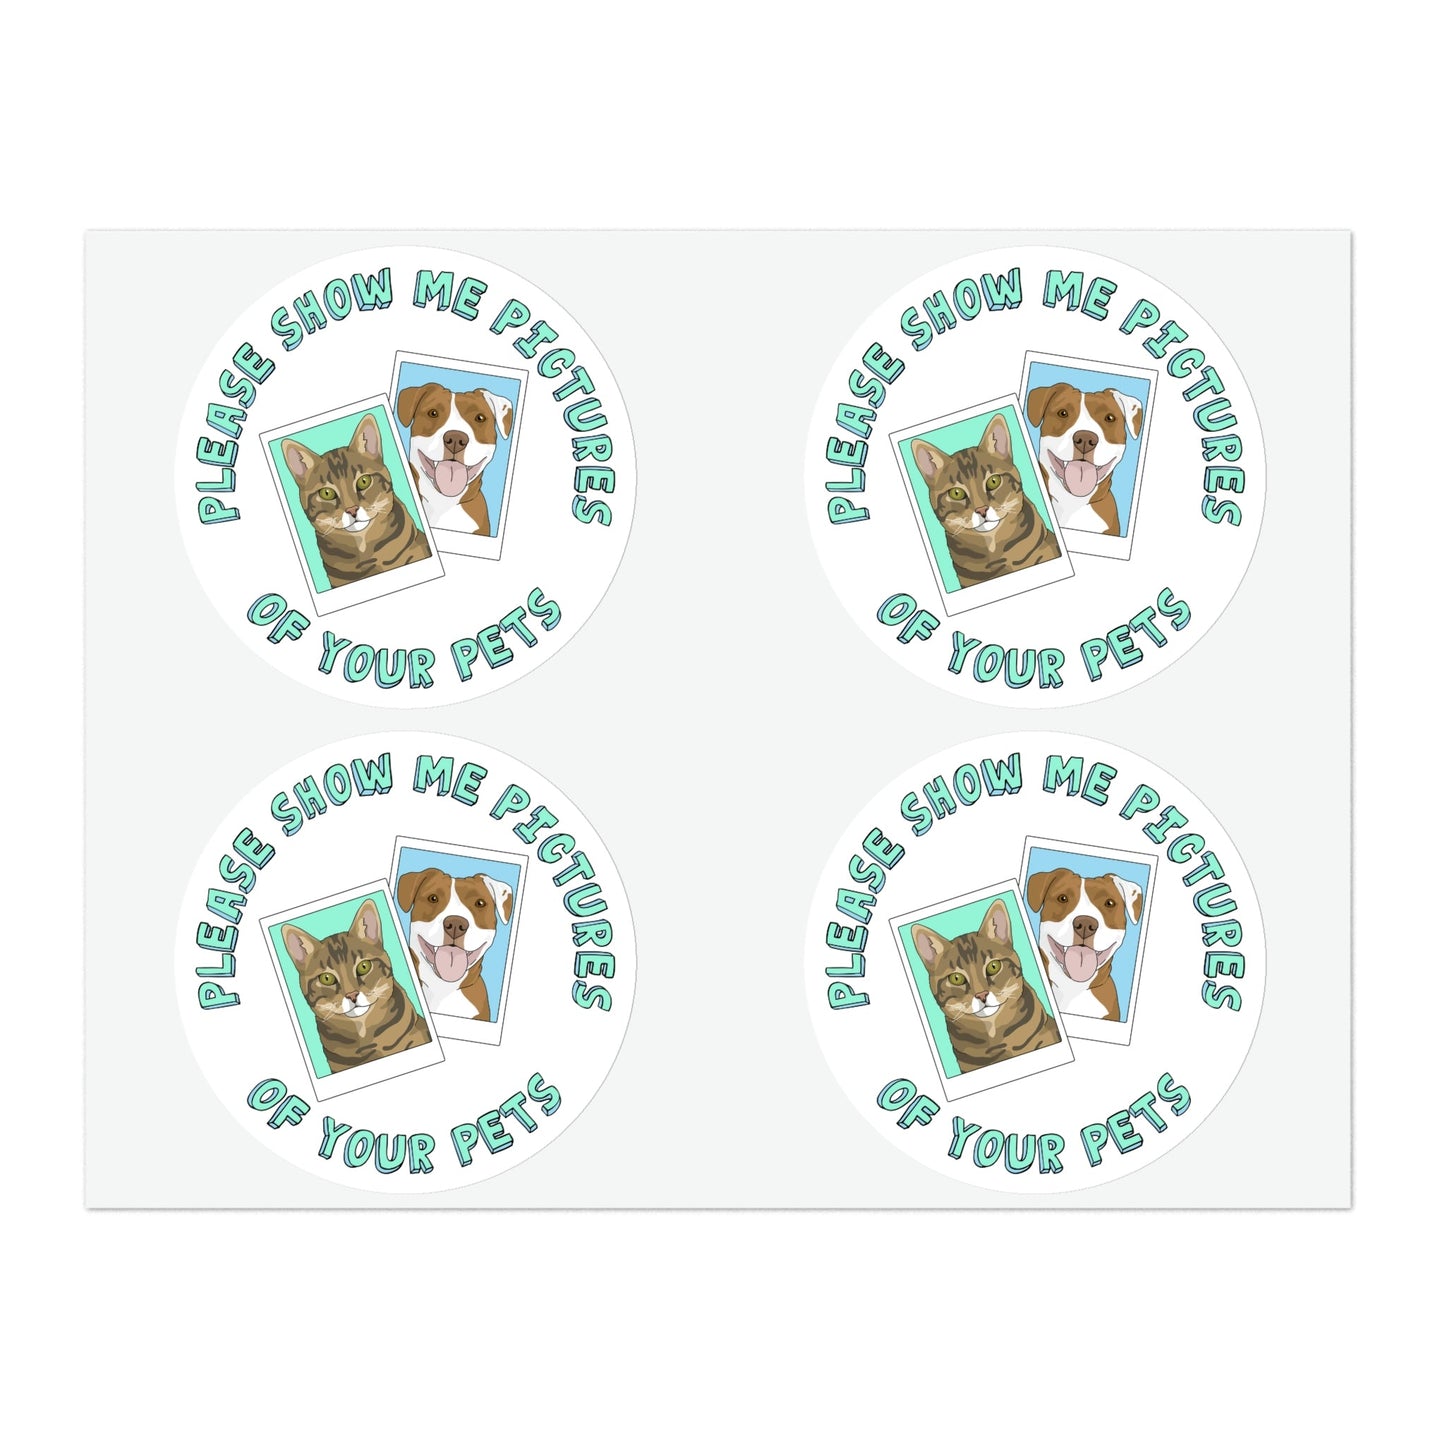 Please Show Me Pictures Of Your Pets | Sticker Sheet - Detezi Designs-10616849465109827292